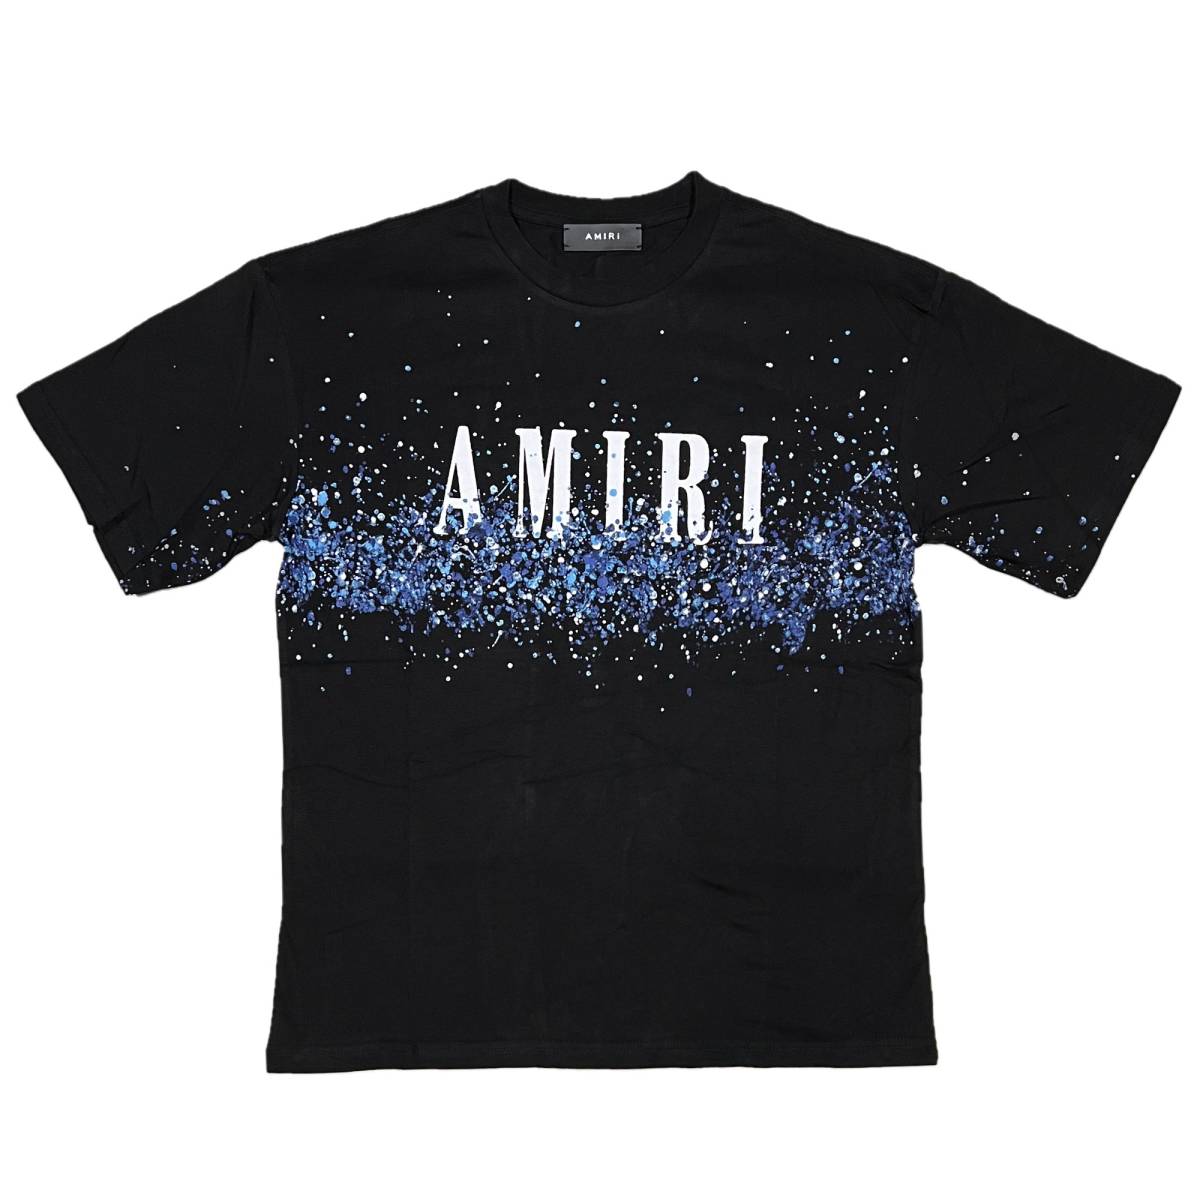 [並行輸入品] AMIRI アミリ BLUE PAINT BLEACH S/S T shirt ブルーペイント ブリーチ 半袖 Tシャツ (ブラック) (XL)_画像1